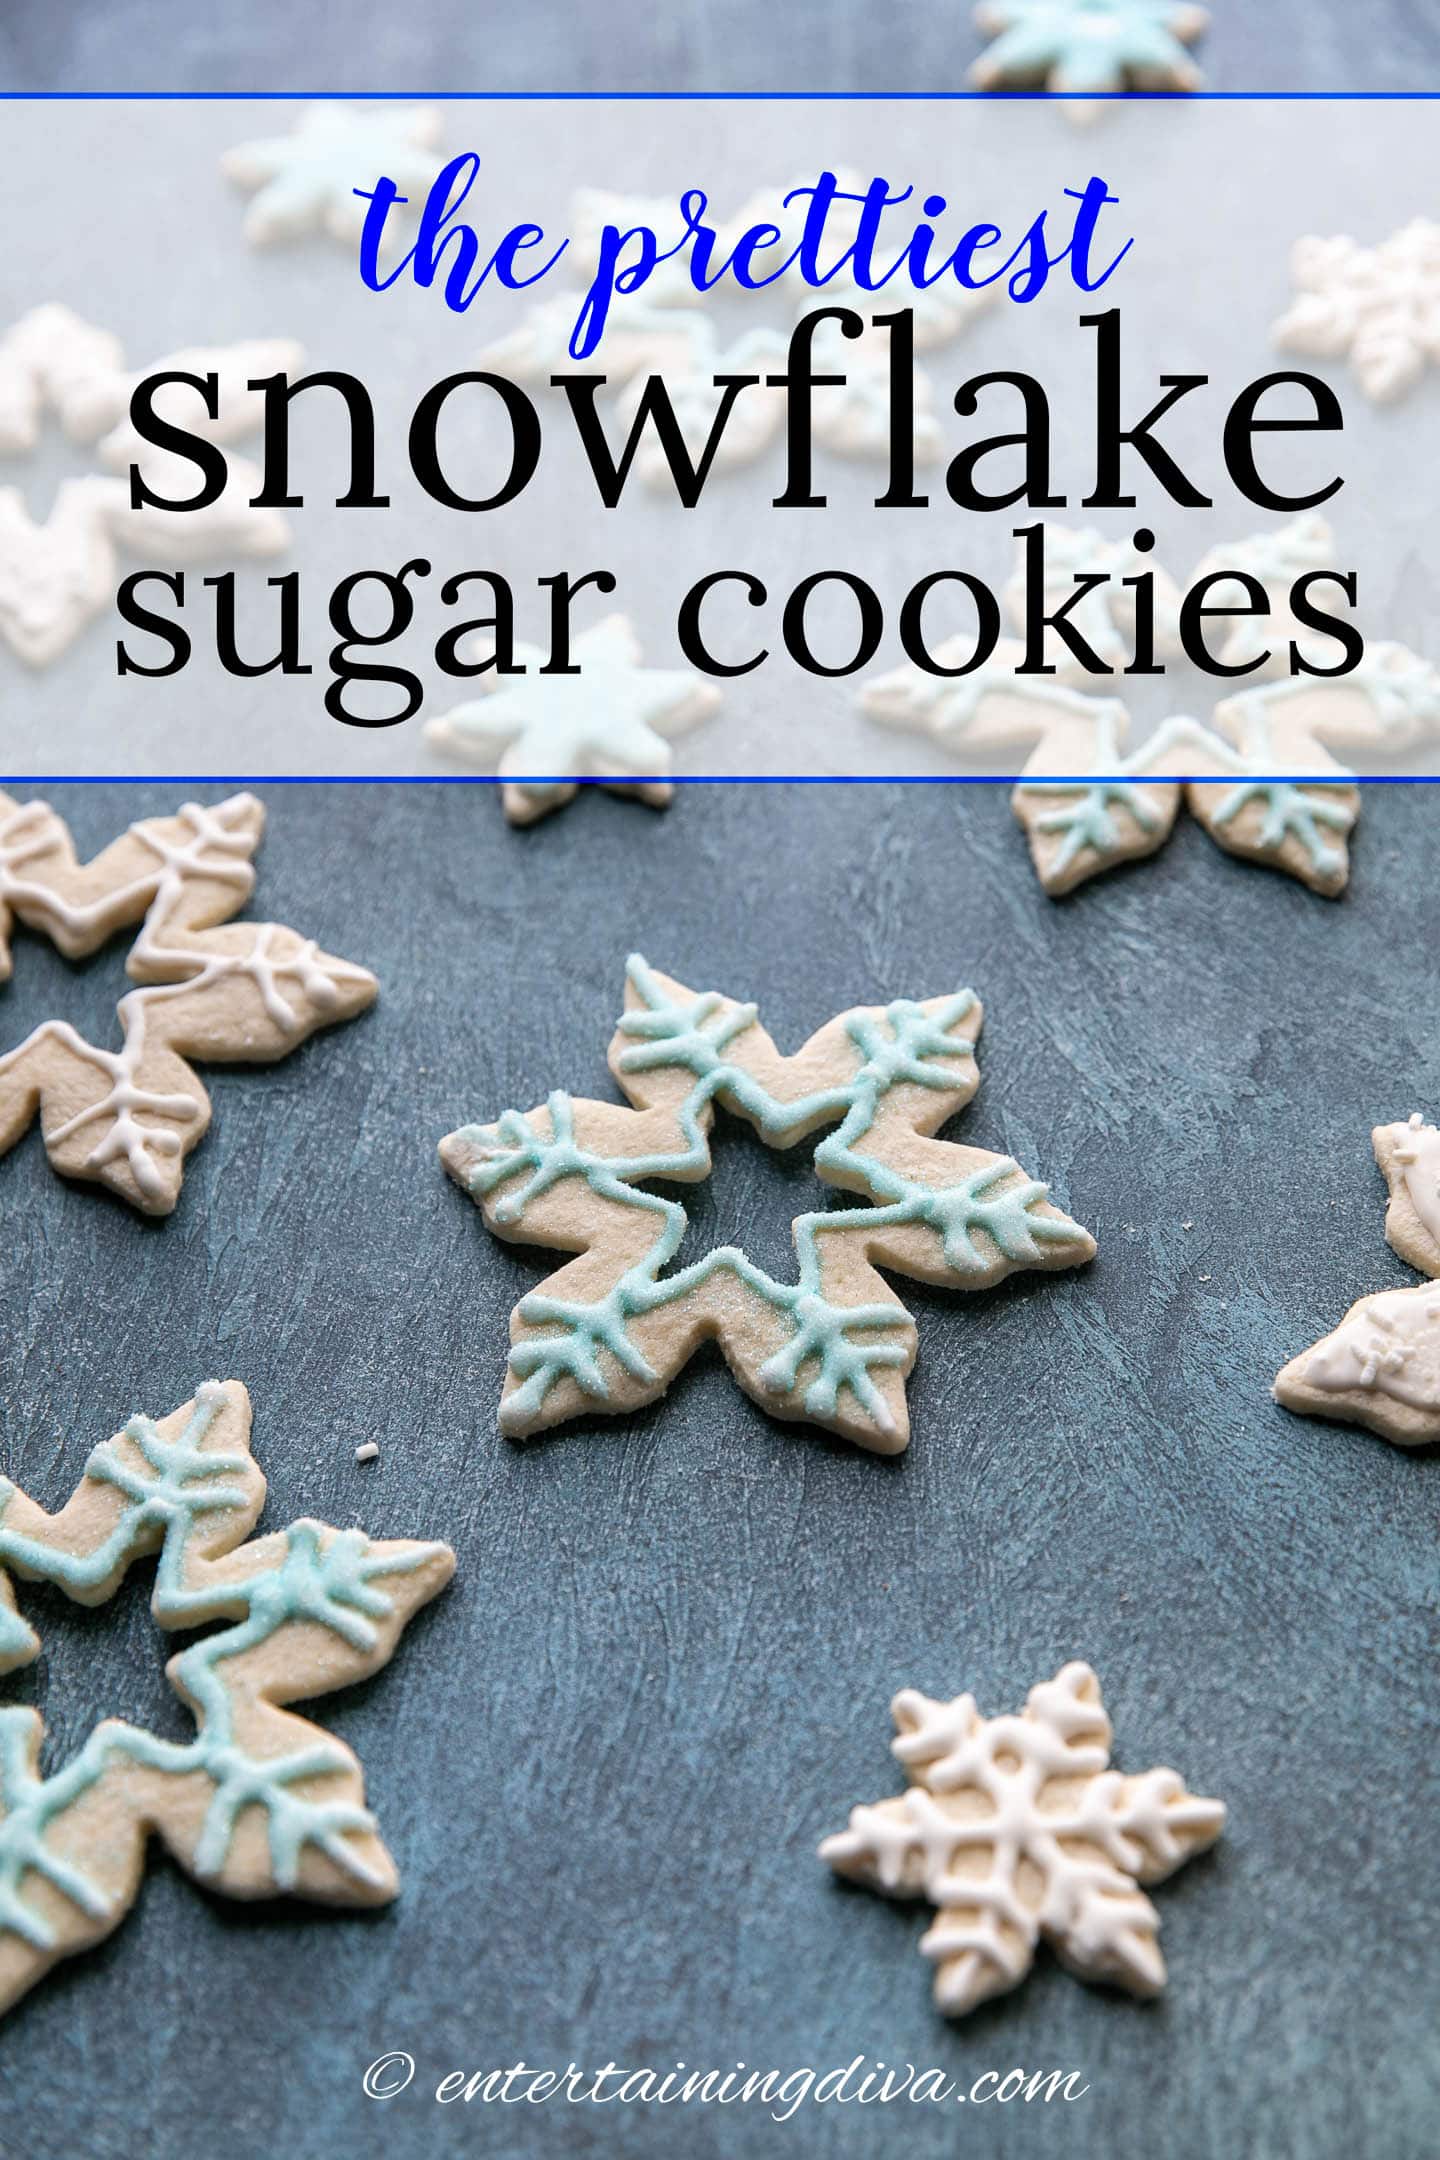 the prettiest snowflake sugar cookies recipe